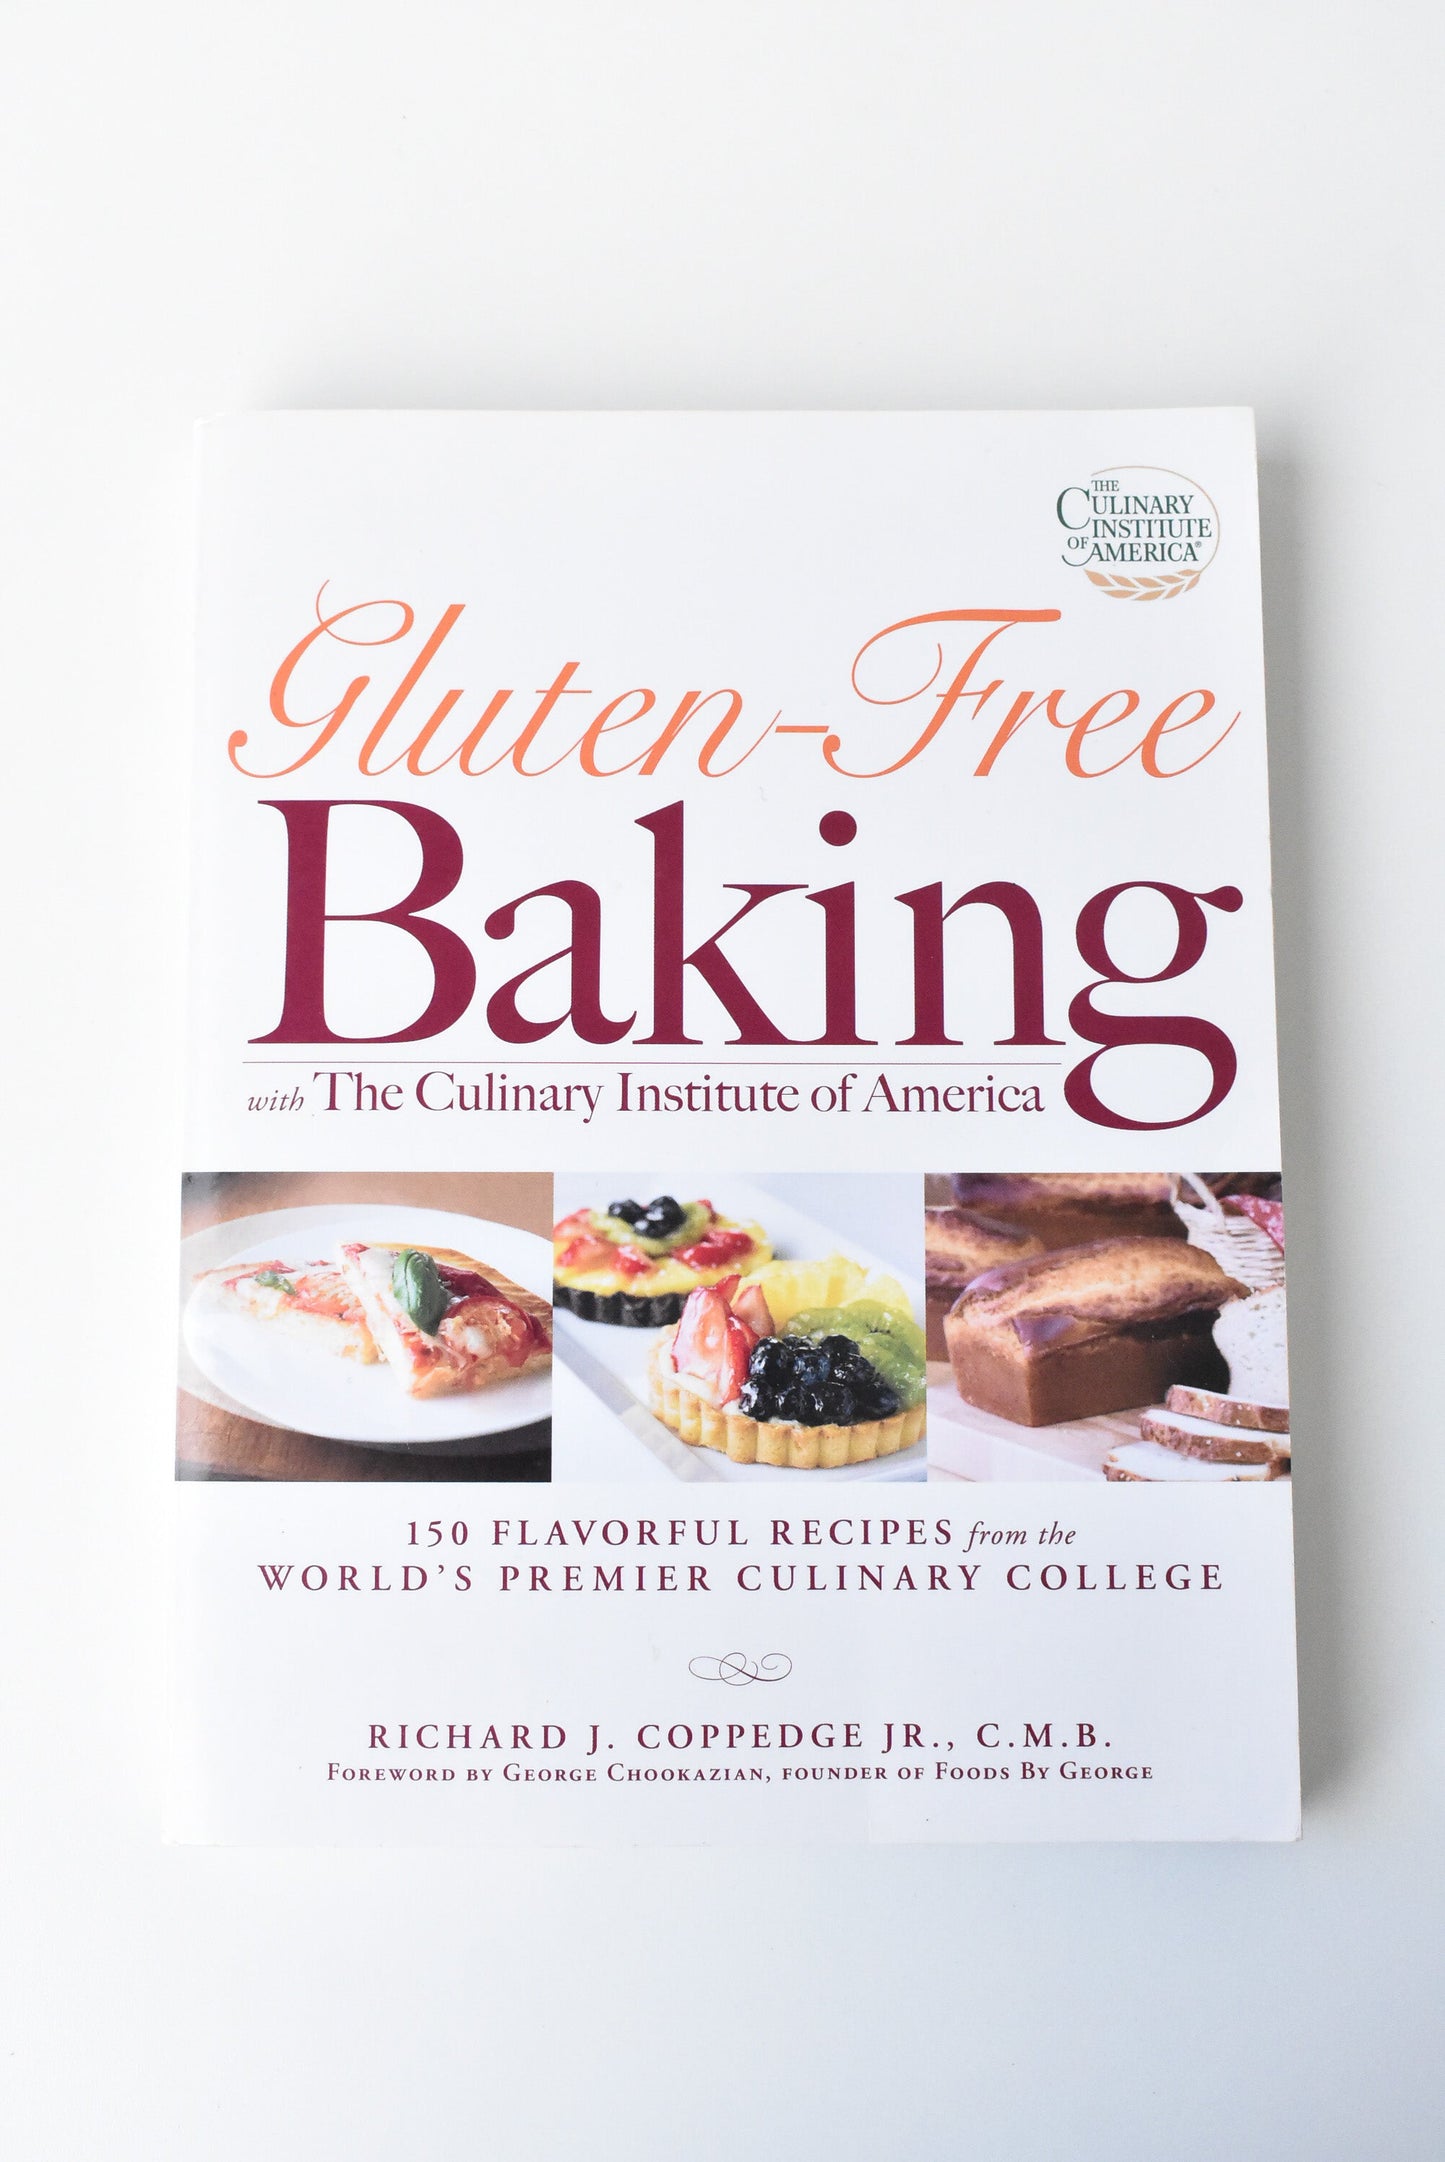 Gluten-Free Baking American Culinary Institute 2008